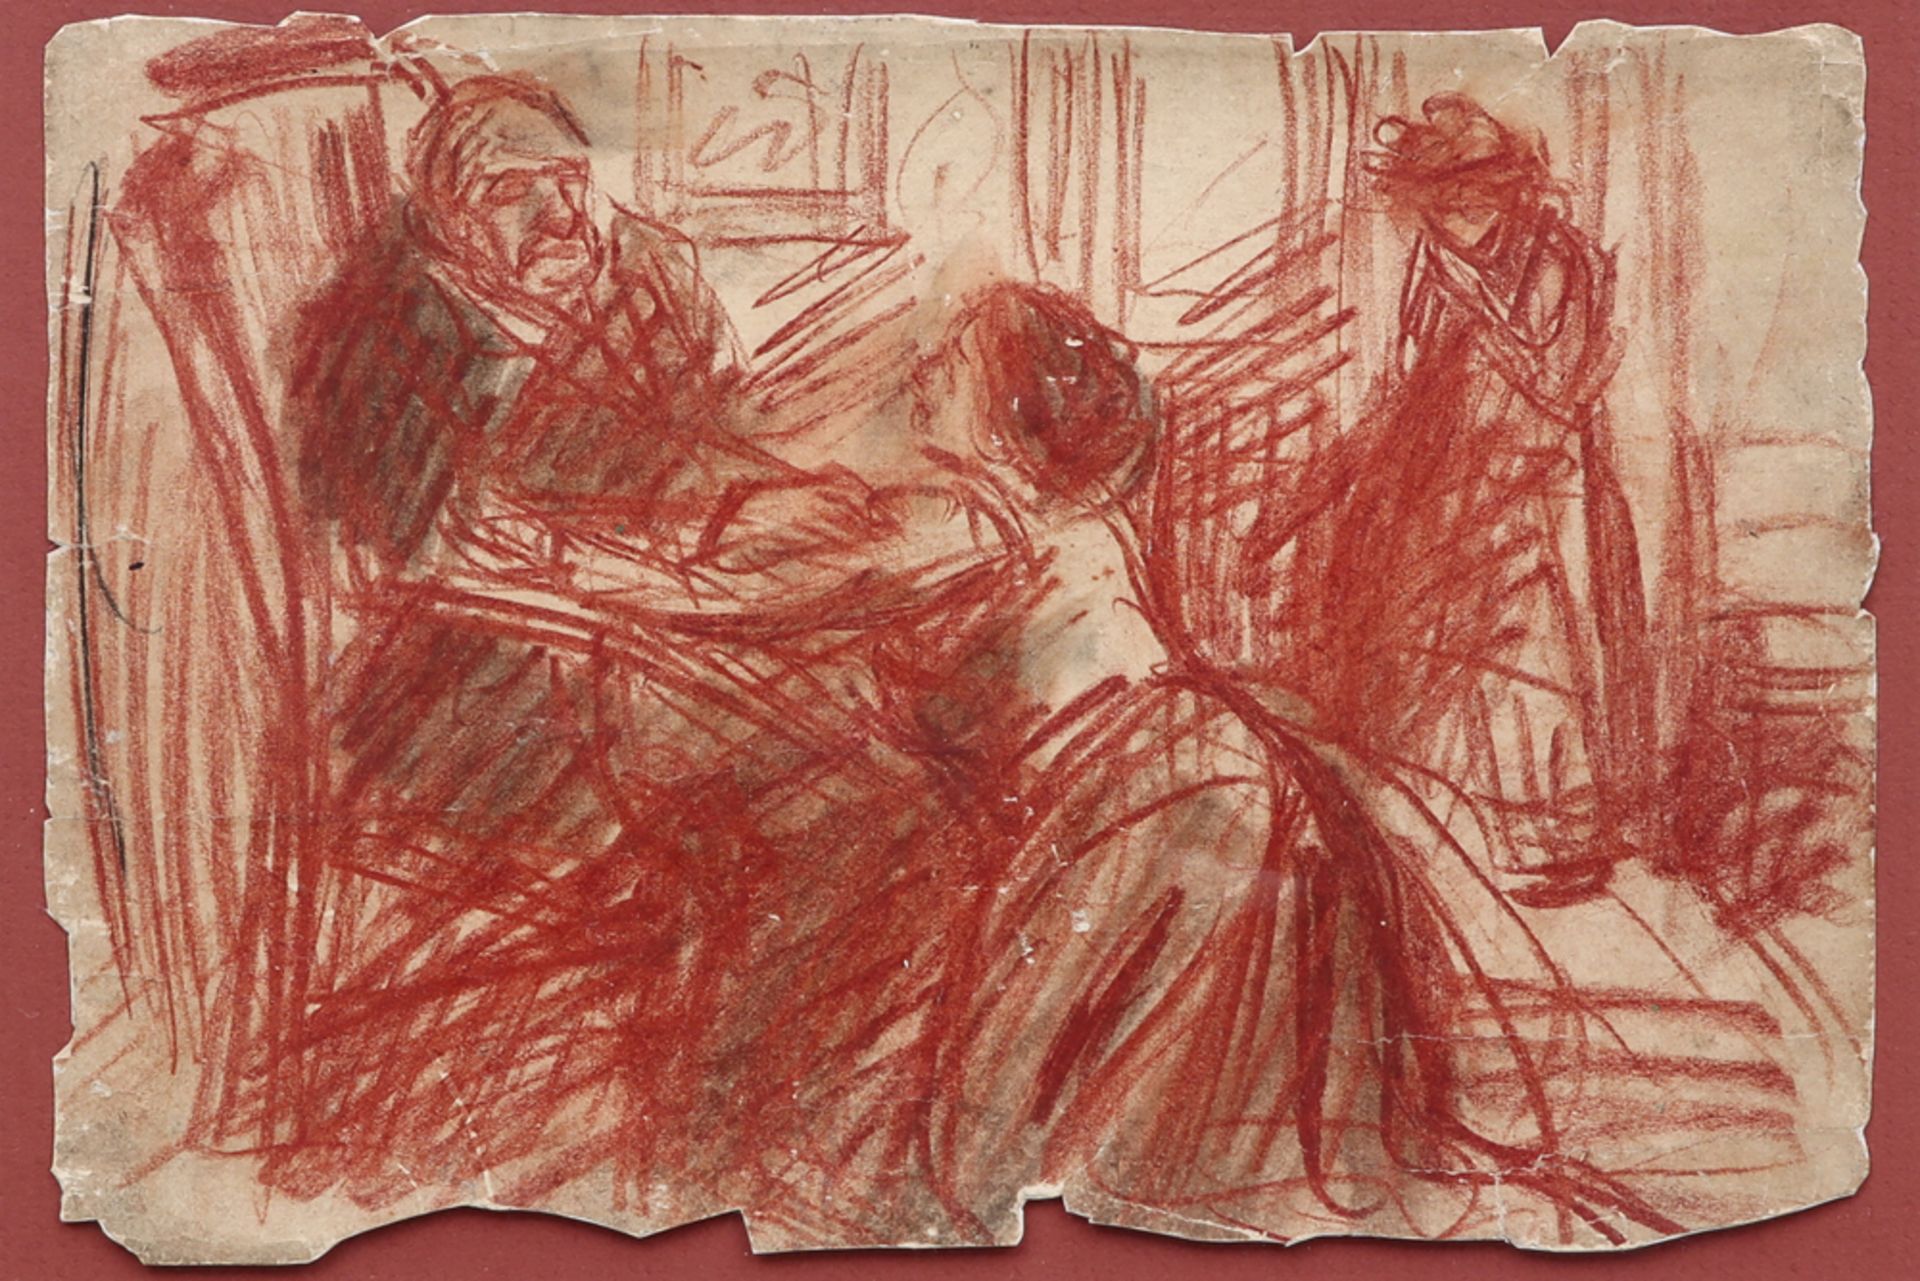 VAN MIEGHEM EUGÈNE (1875 - 1930) tekening (hoofdzakelijk sanguine) : "Twee vrouwen bij oude heer"  -